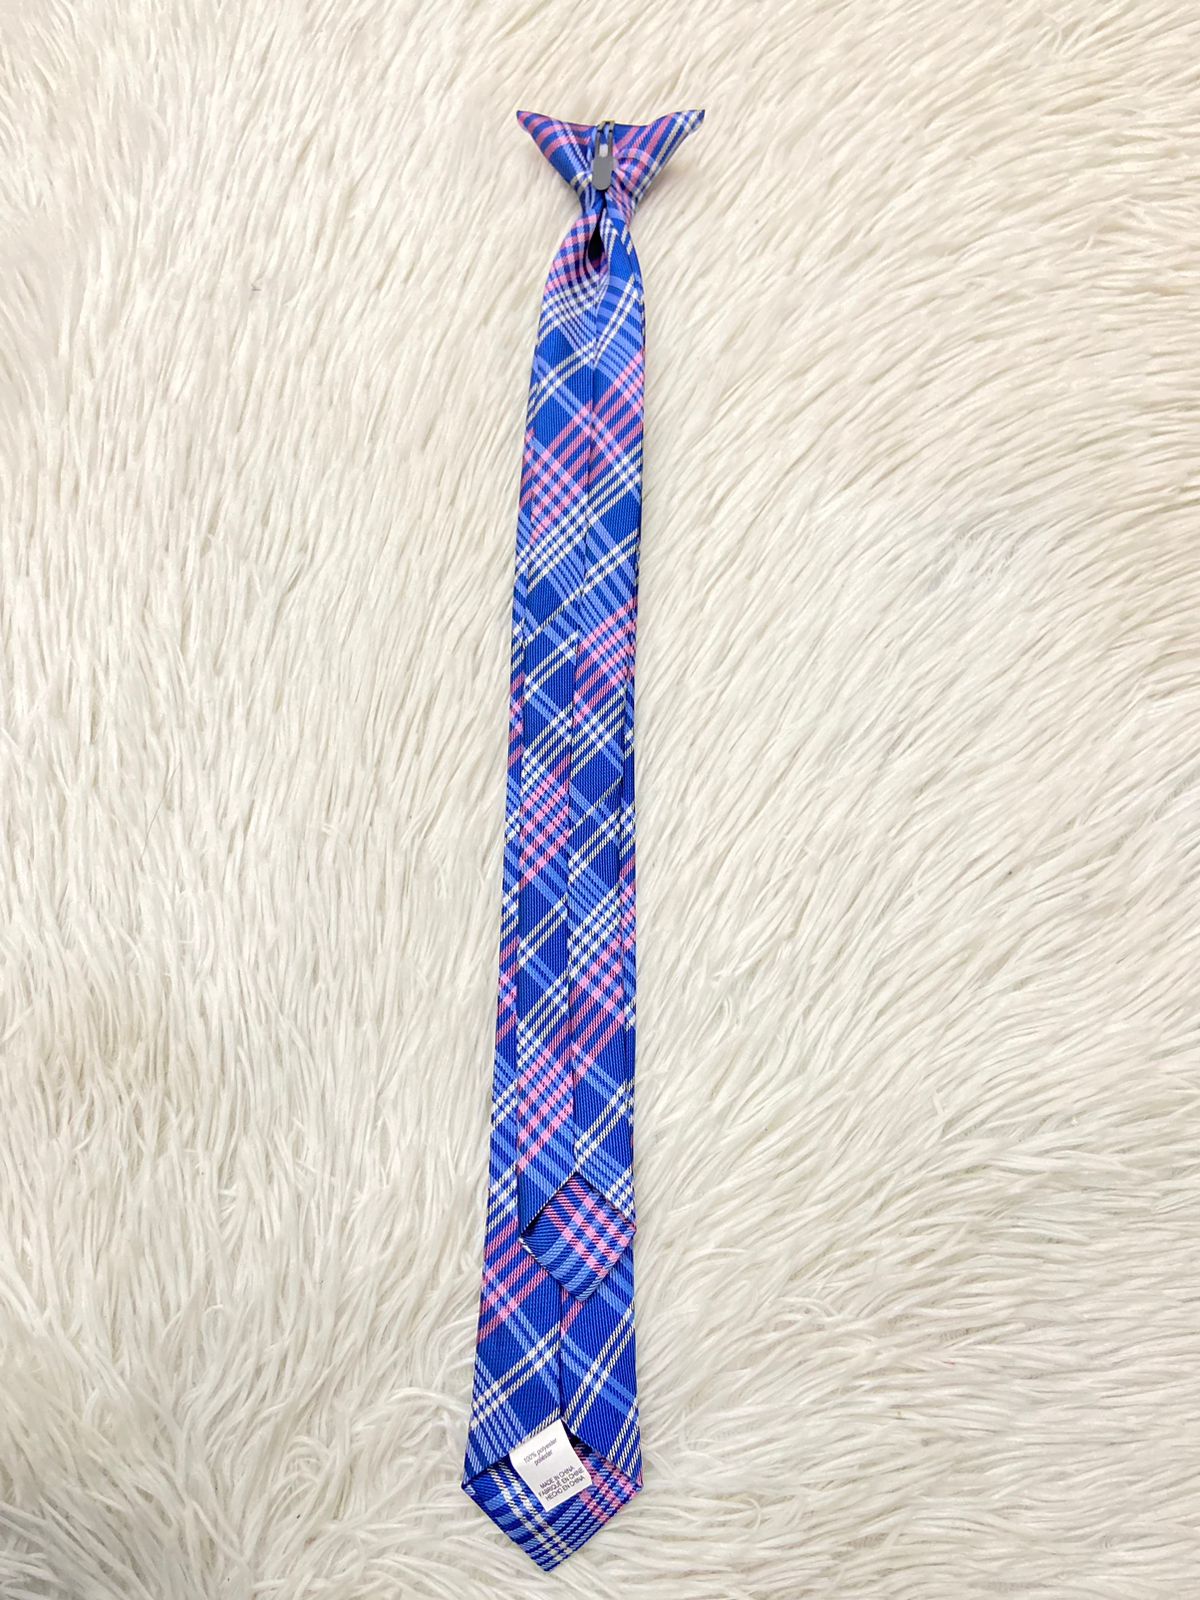 Corbata TOMMY HILFIGER original, azul marino con diseños en líneas, rosados y blancos.